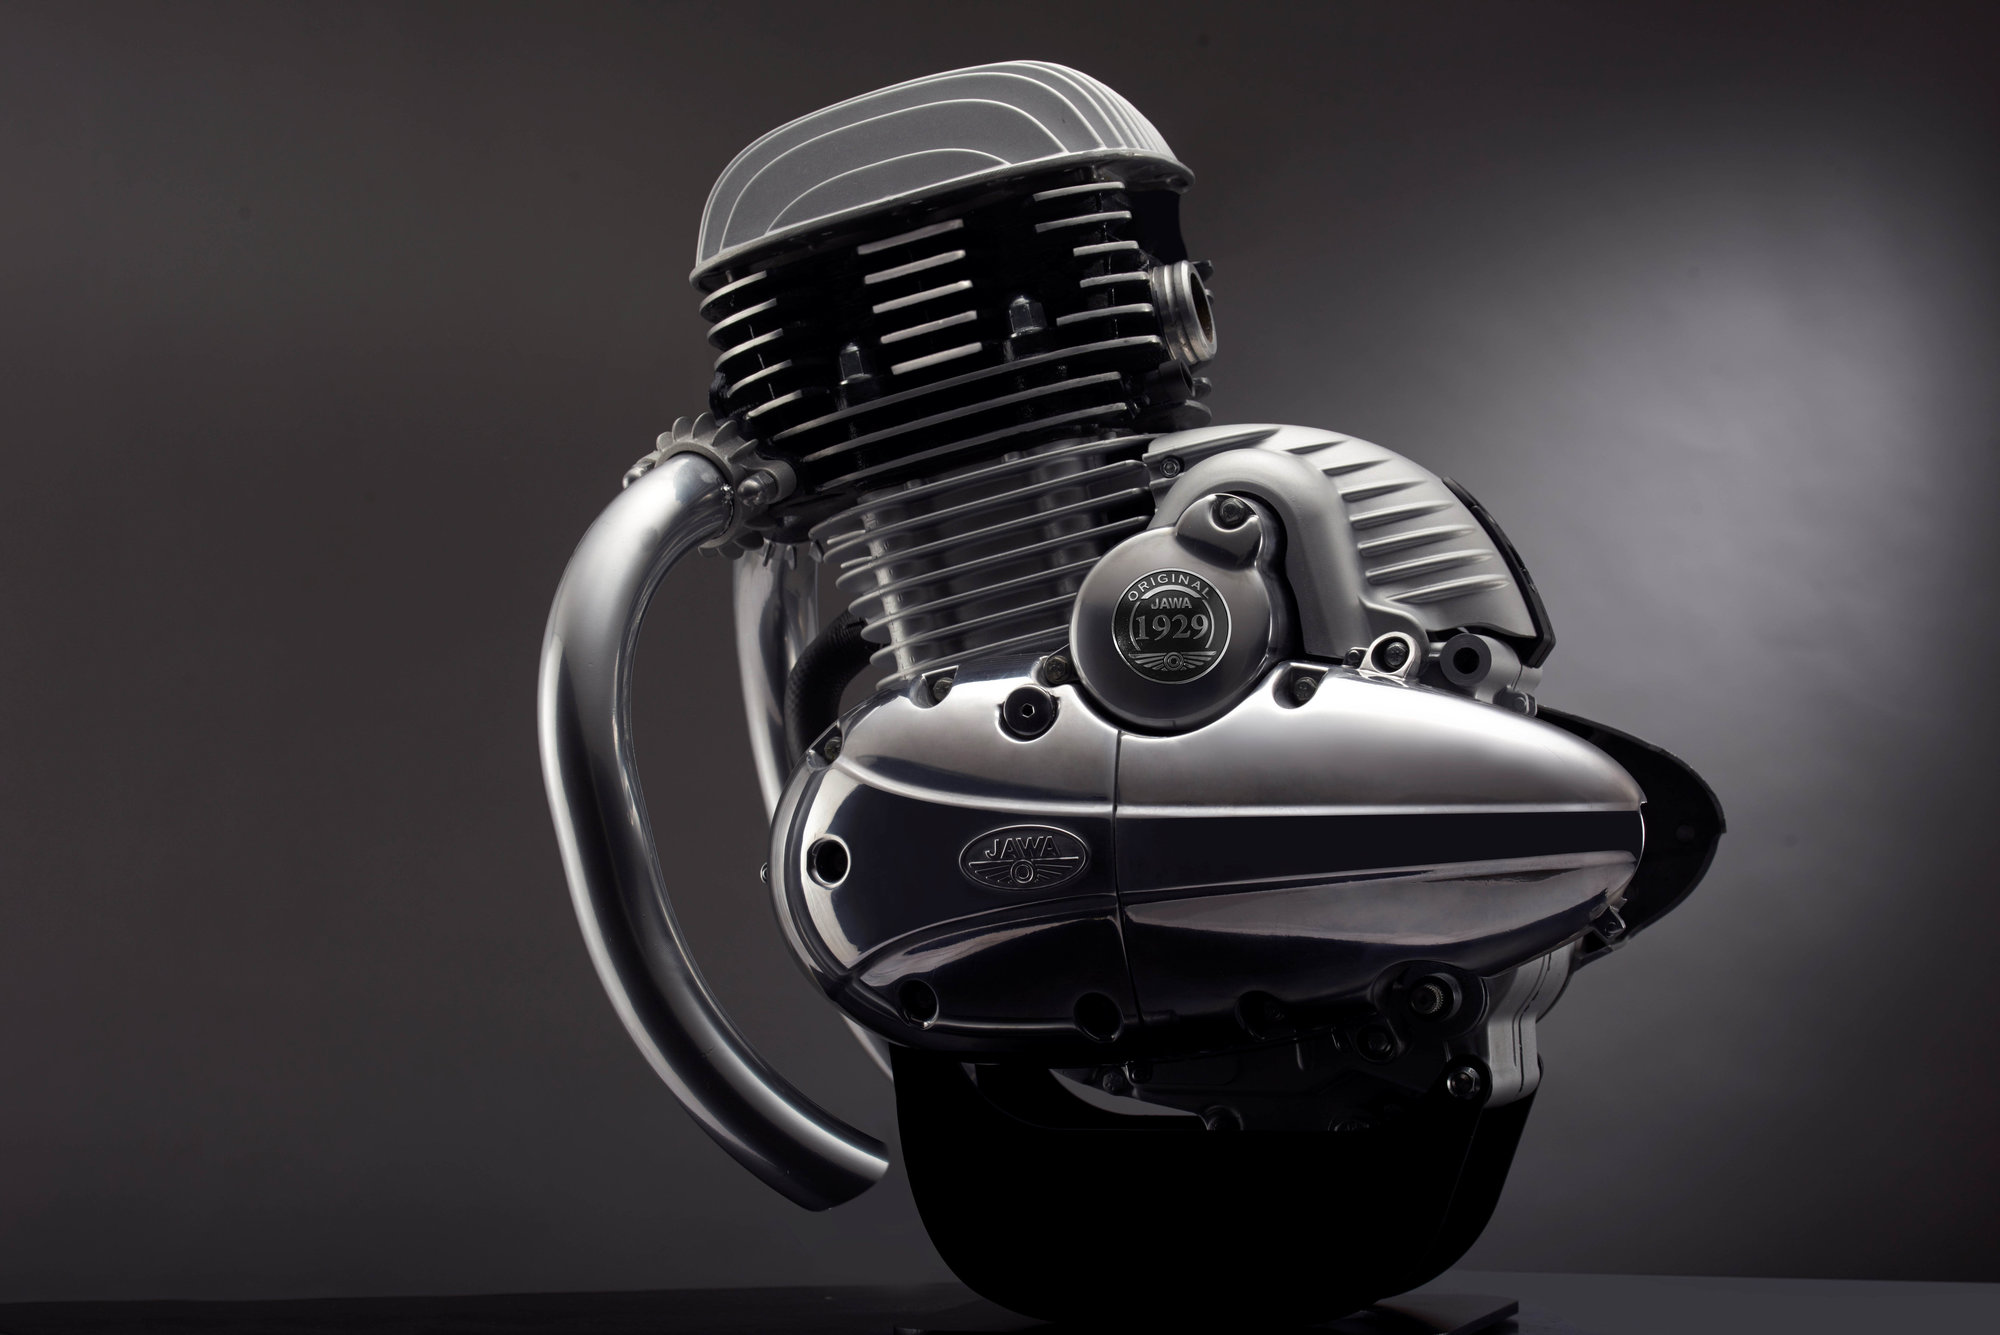 Nový motor připravený pro nové motocykly JAWA